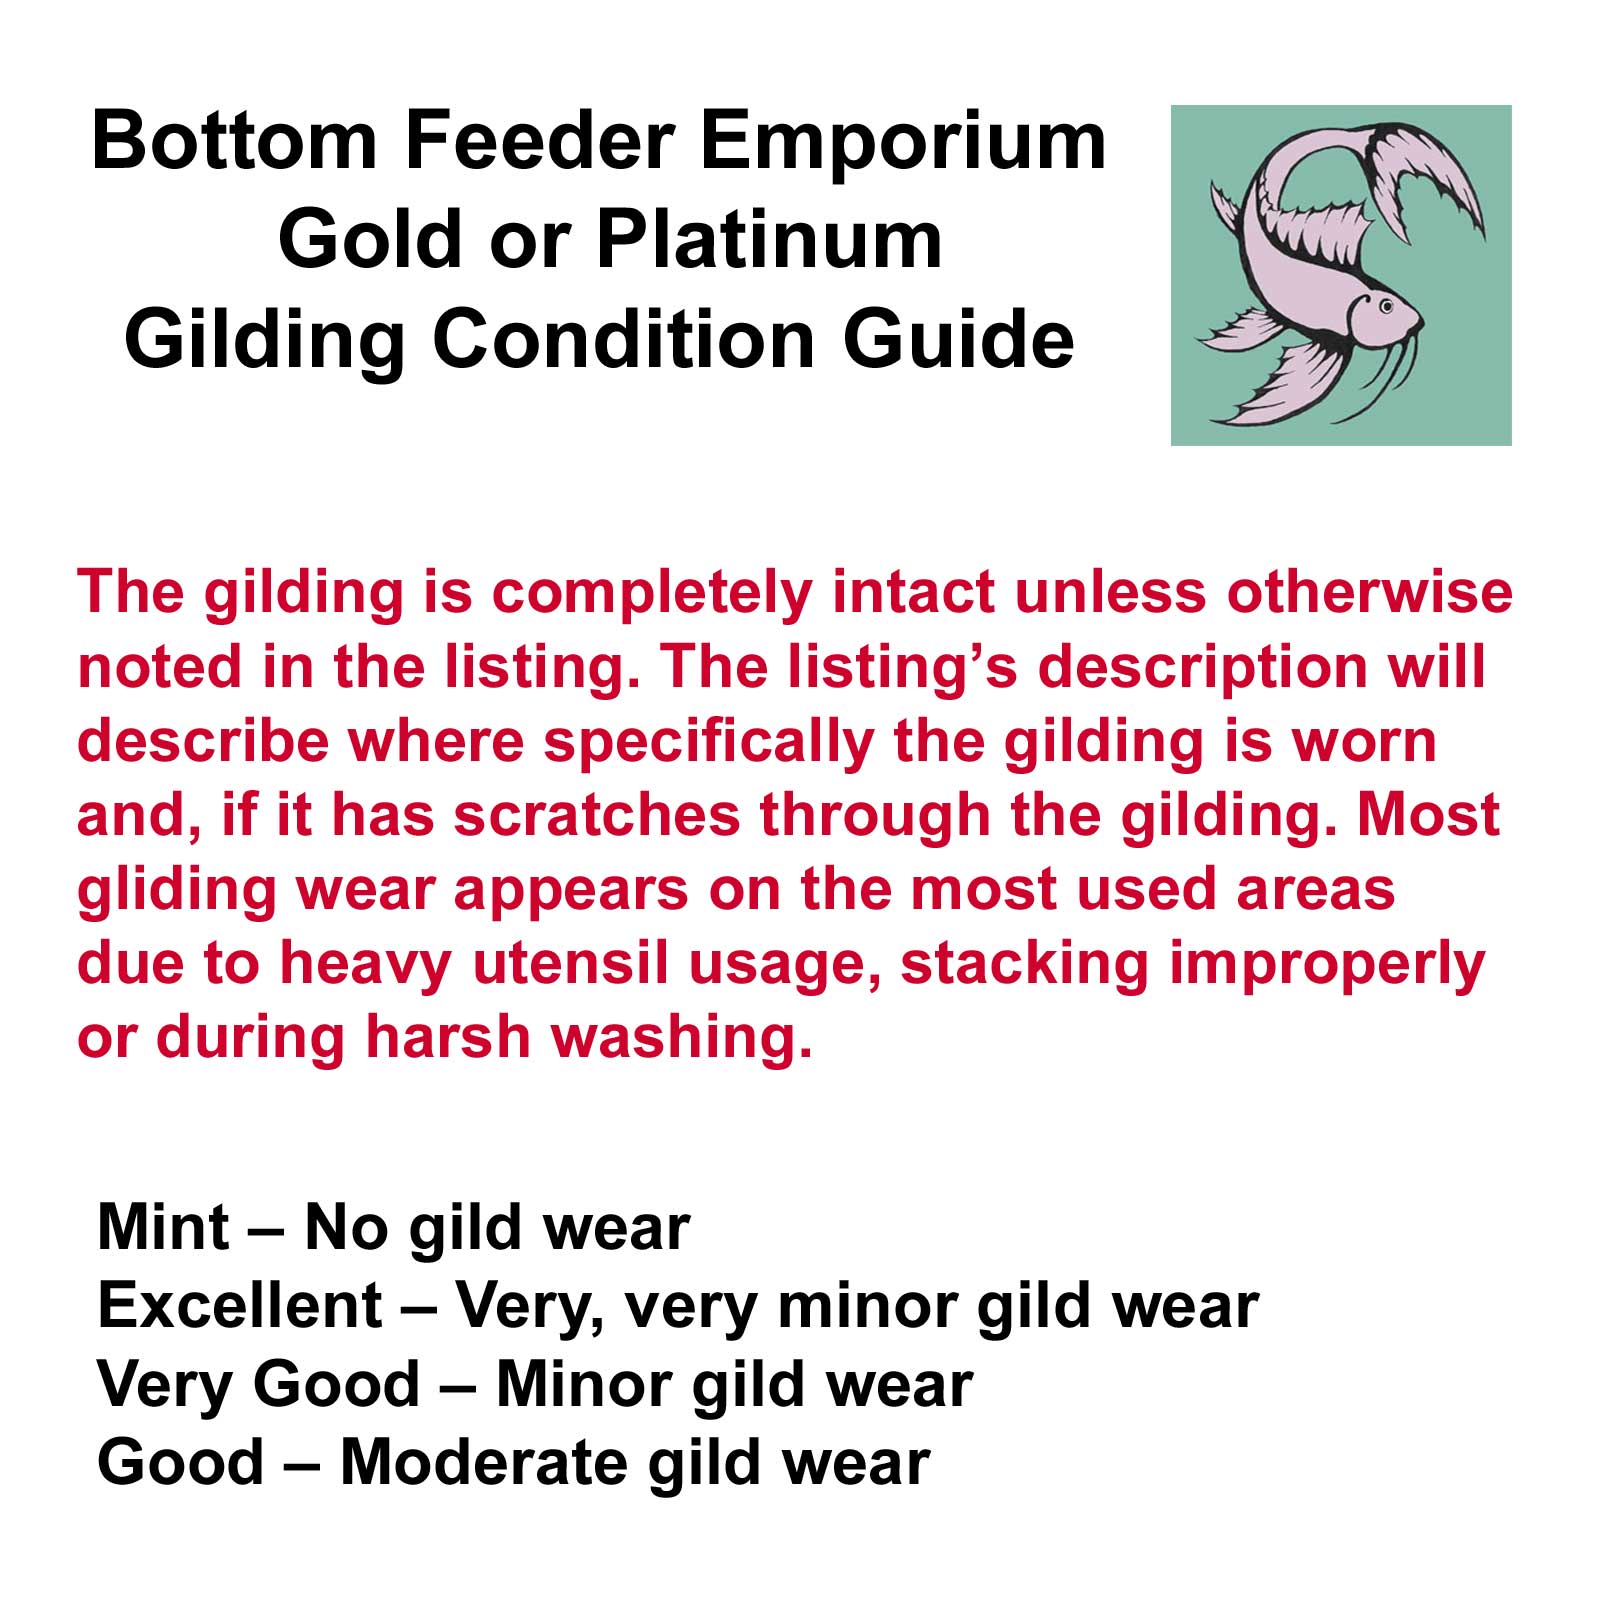 Bottom Feeder Emporium Gold or Platinum Gilding Condition Guide